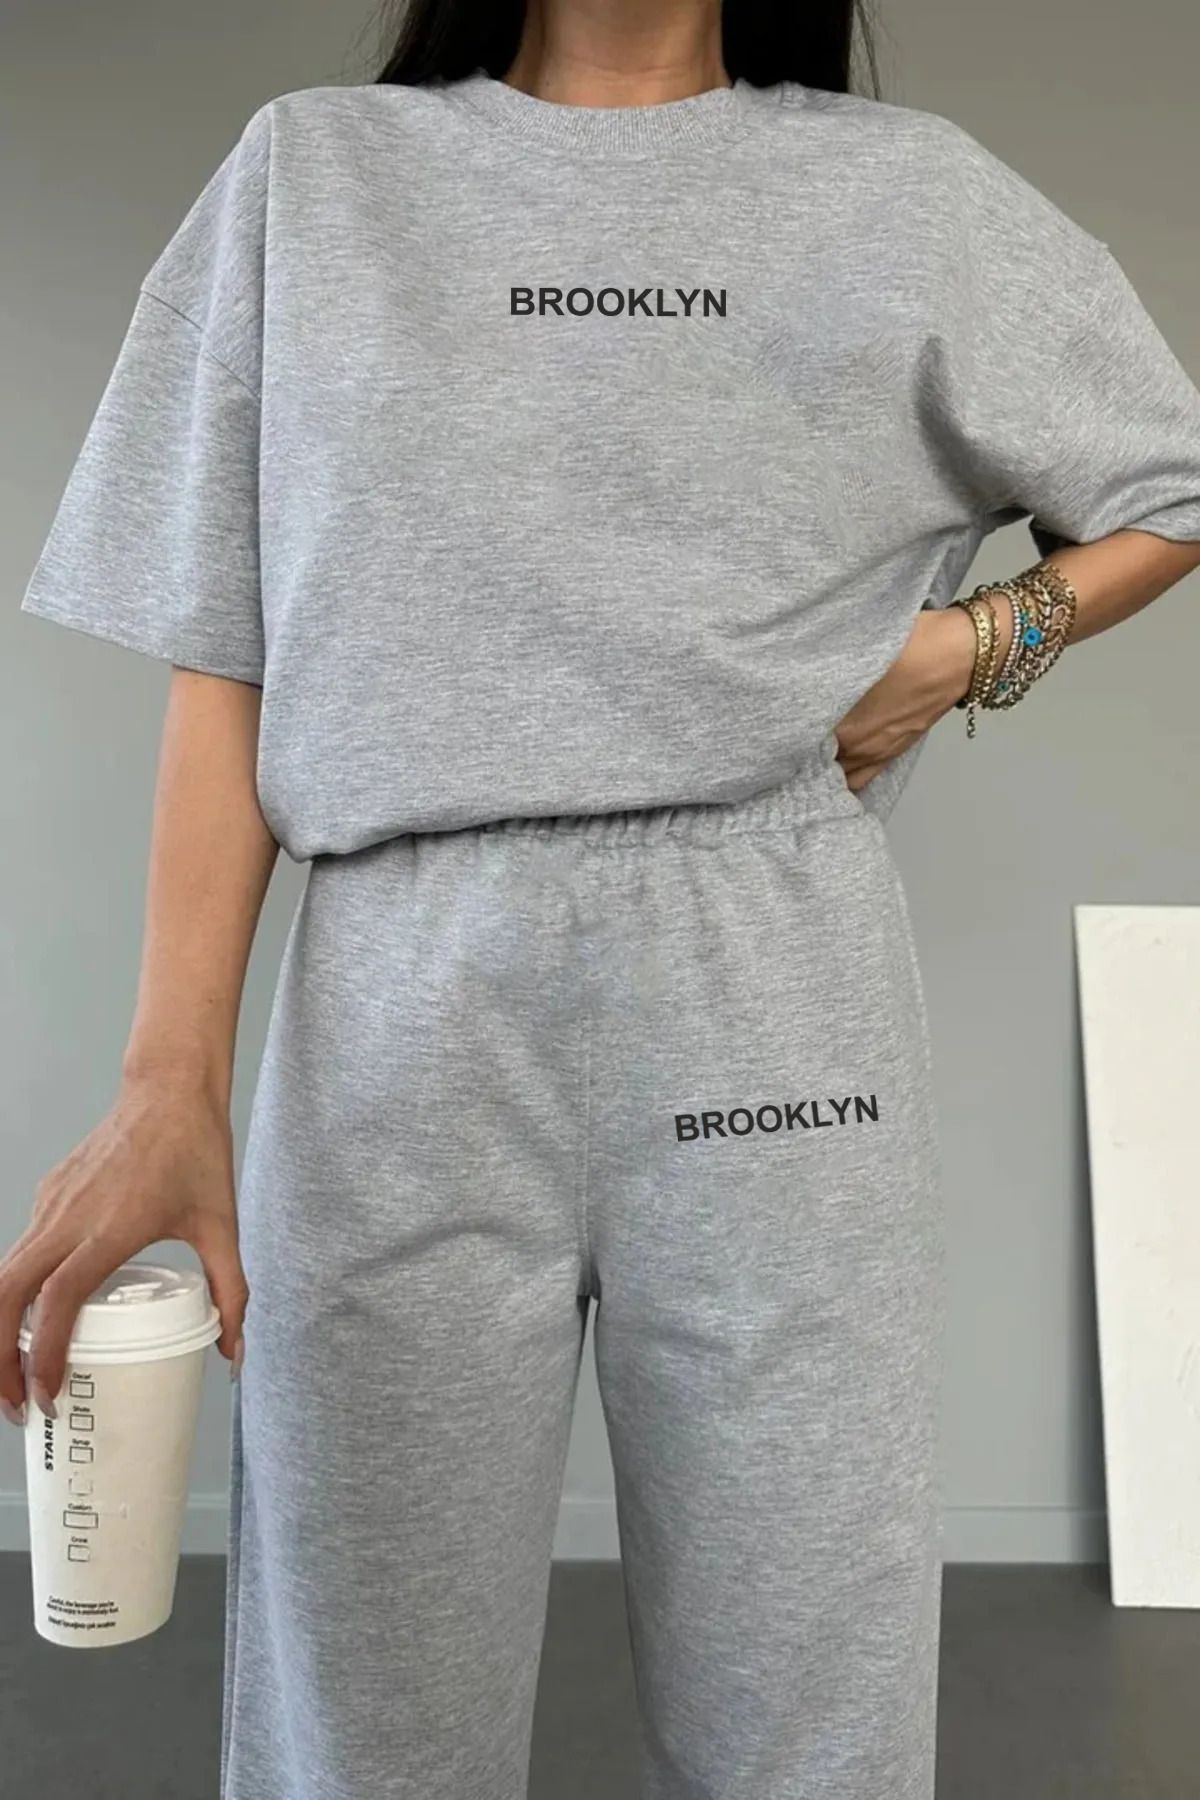 Genel Markalar Kadın Brooklyn Baskılı Sweatshirt Alt Üst Eşofman Takımı